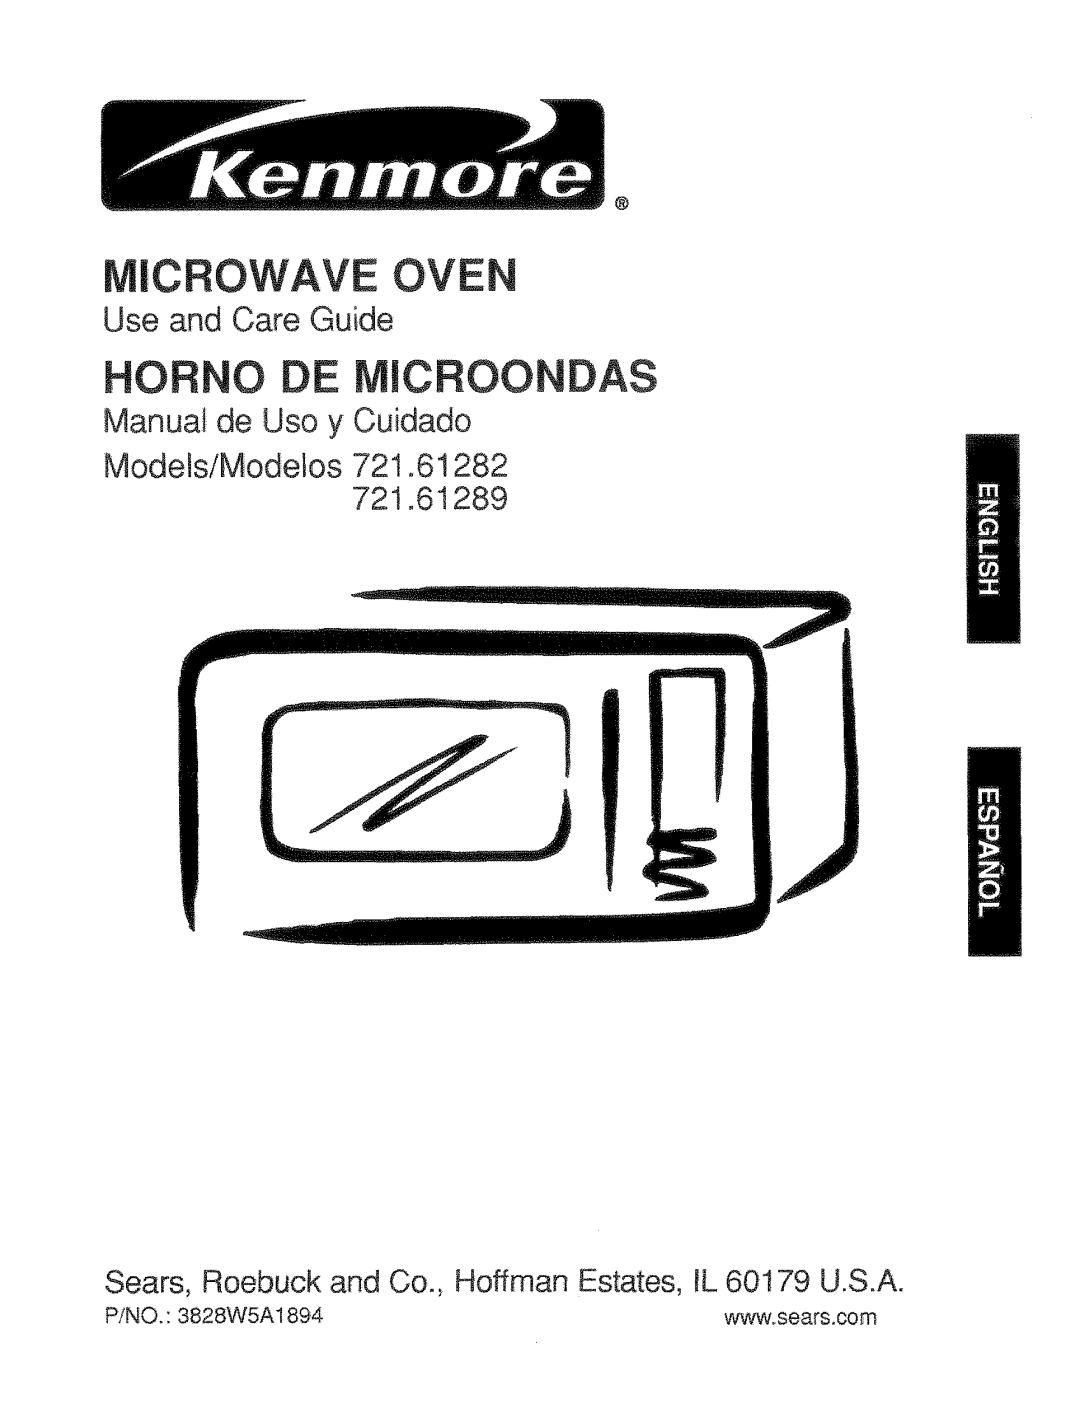 Kenmore 721.61282 manual Cfiowave Oven, Hofino Microondas, Use and Care Guide, Manual de Uso y Cuidado, P/NO. 3828WSA1894 